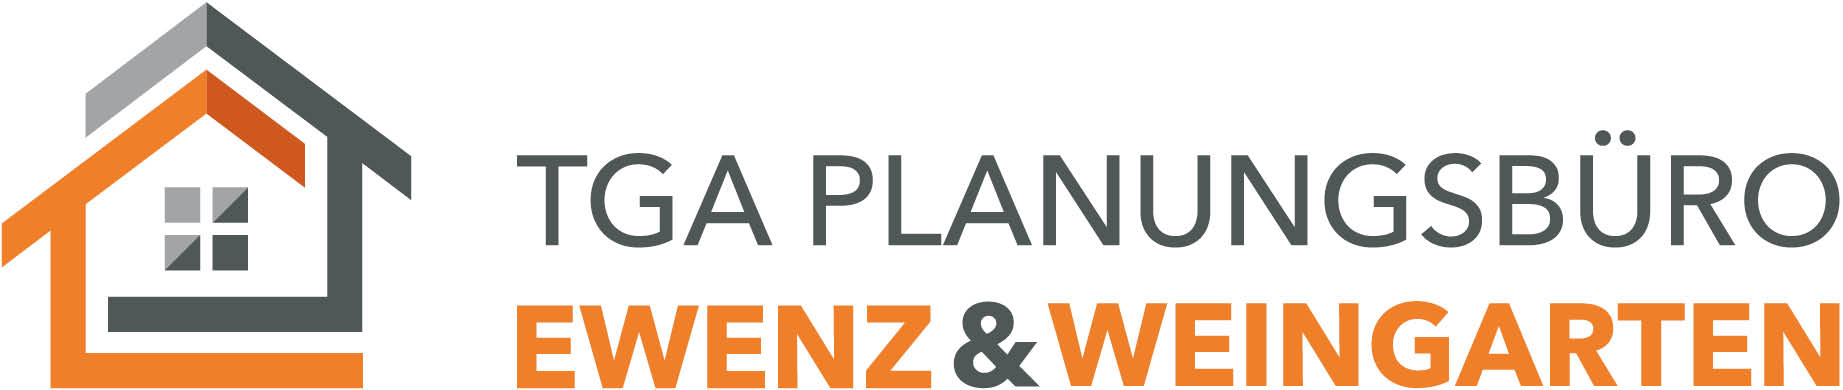 Banner - TGA Planungsbüro Ewenz & Weingarten GbR